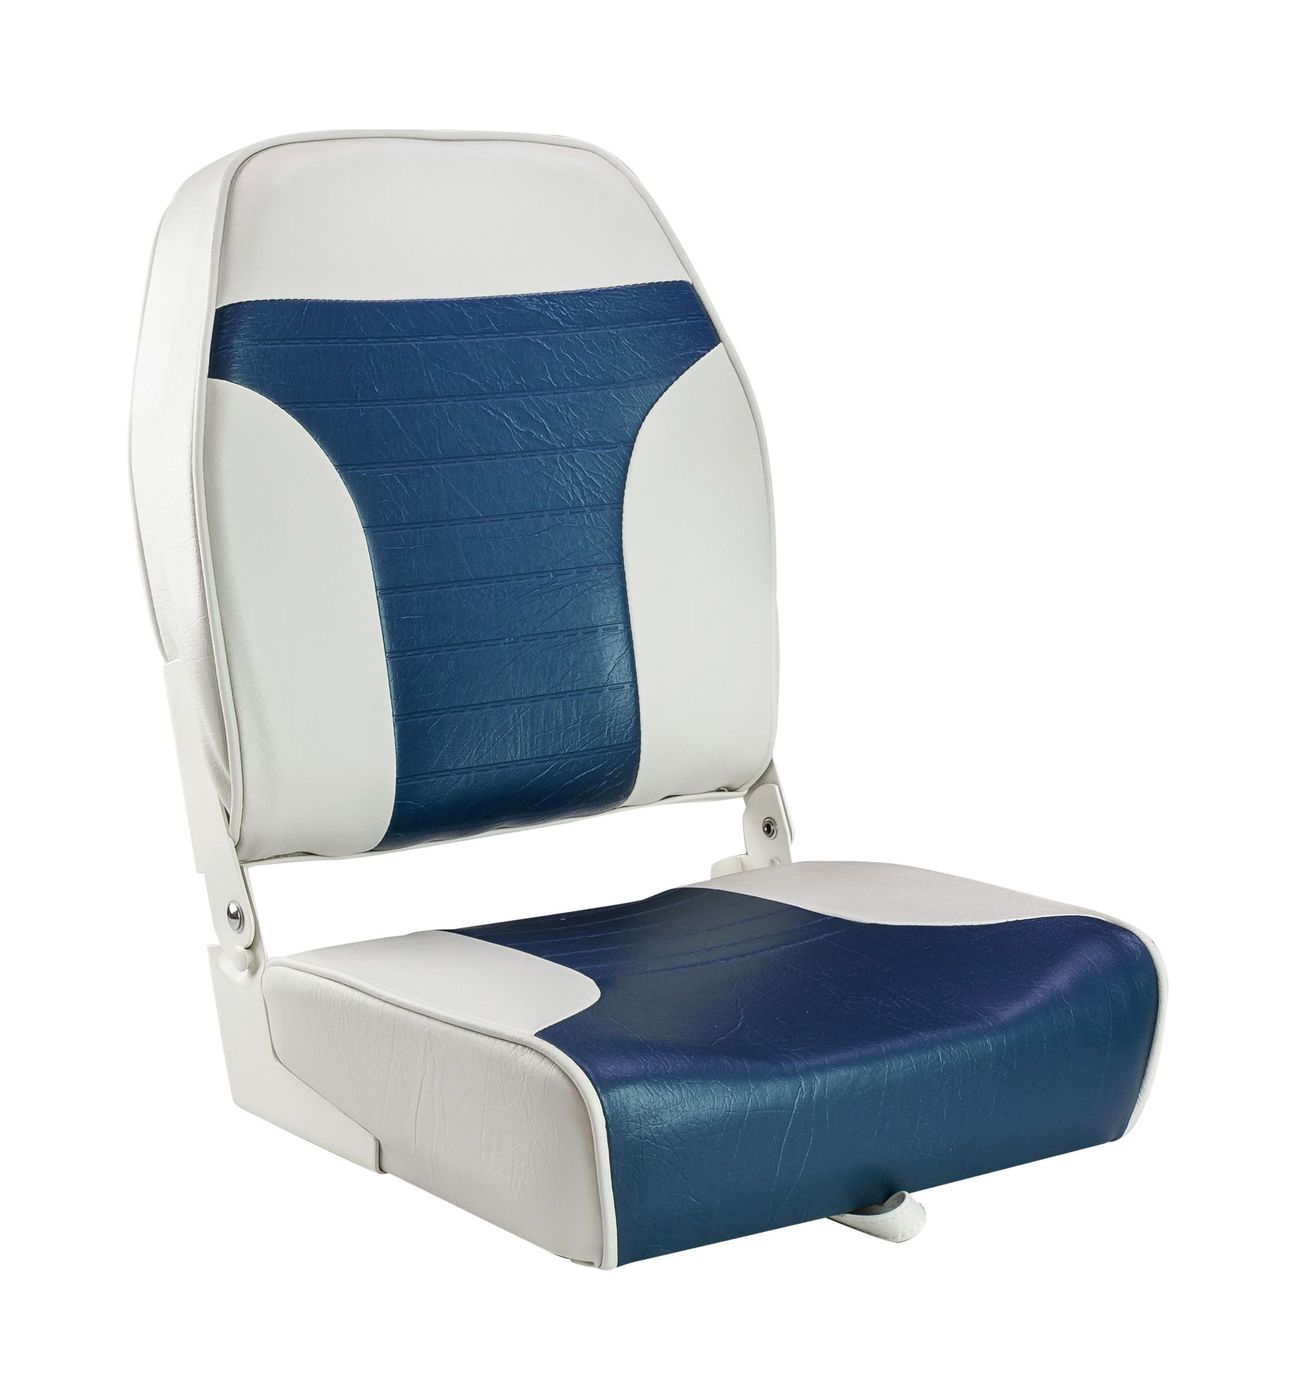 Кресло складное мягкое ECONOMY с высокой спинкой, цвет белый/синий 1040667 кресло складное мягкое economy с низкой спинкой синий 1040621